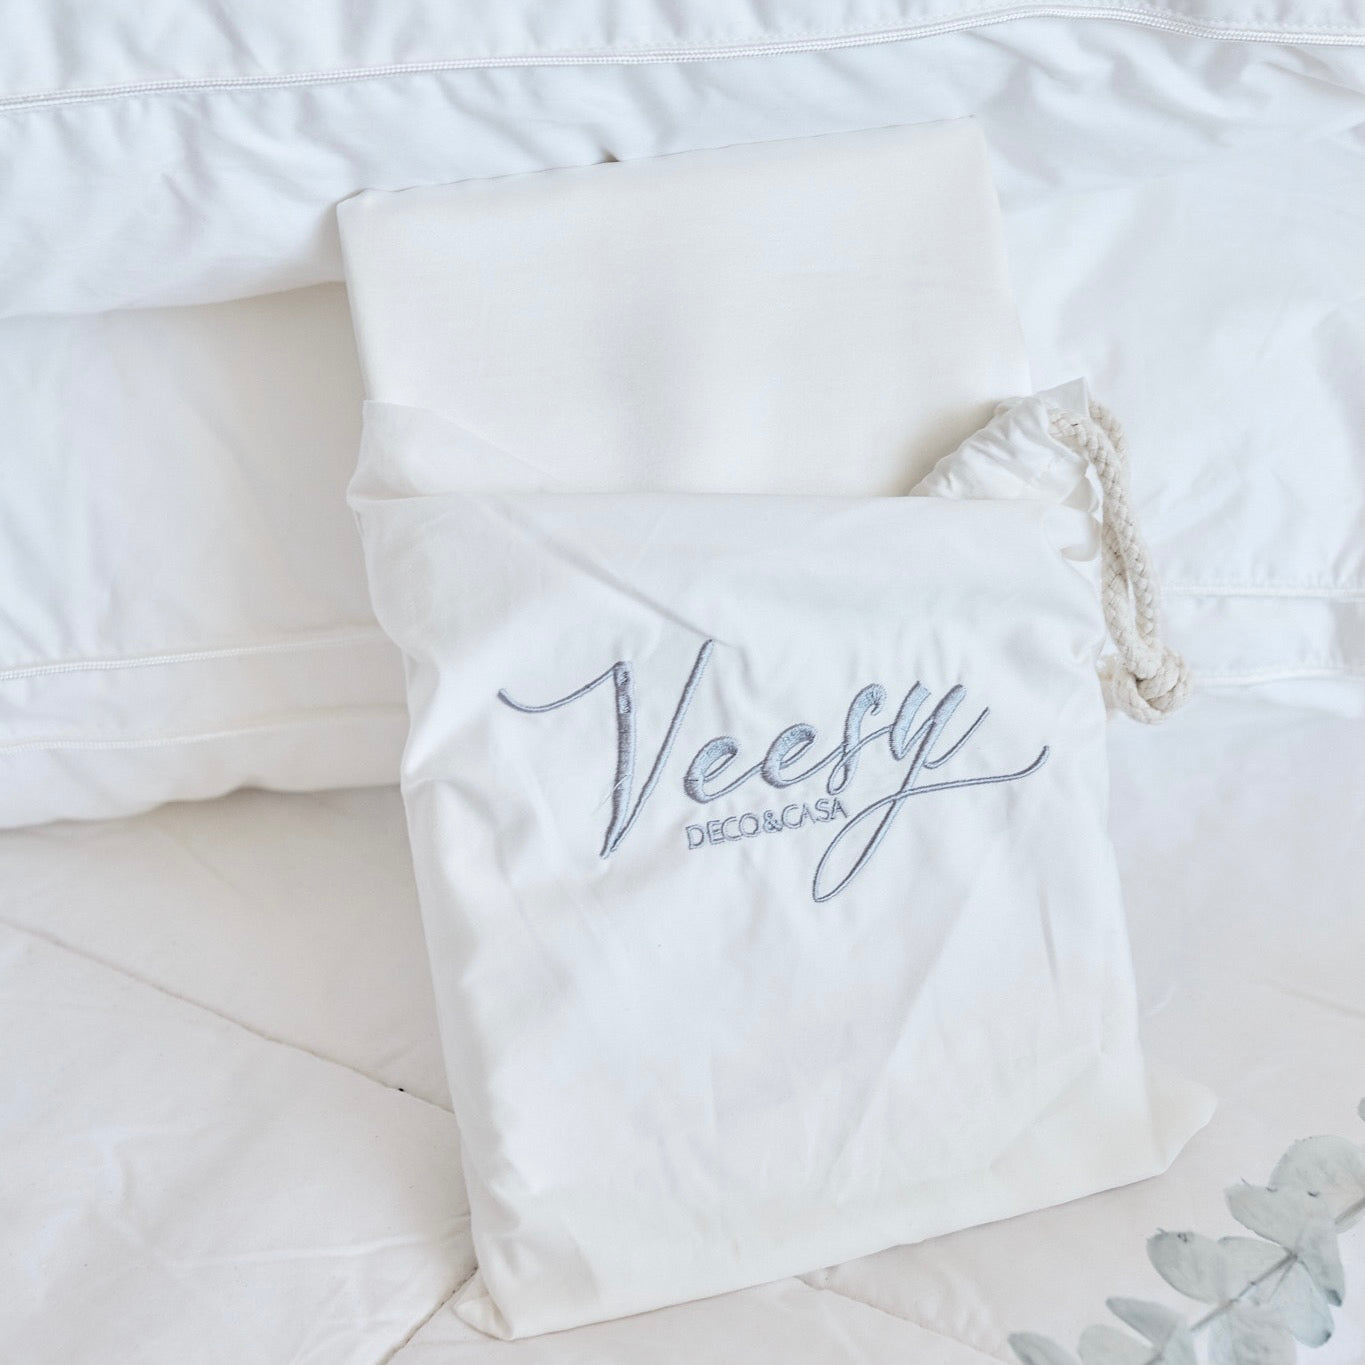 Pack 2 fundas almohadas seda natural blanco – Veesy Deco y Casa